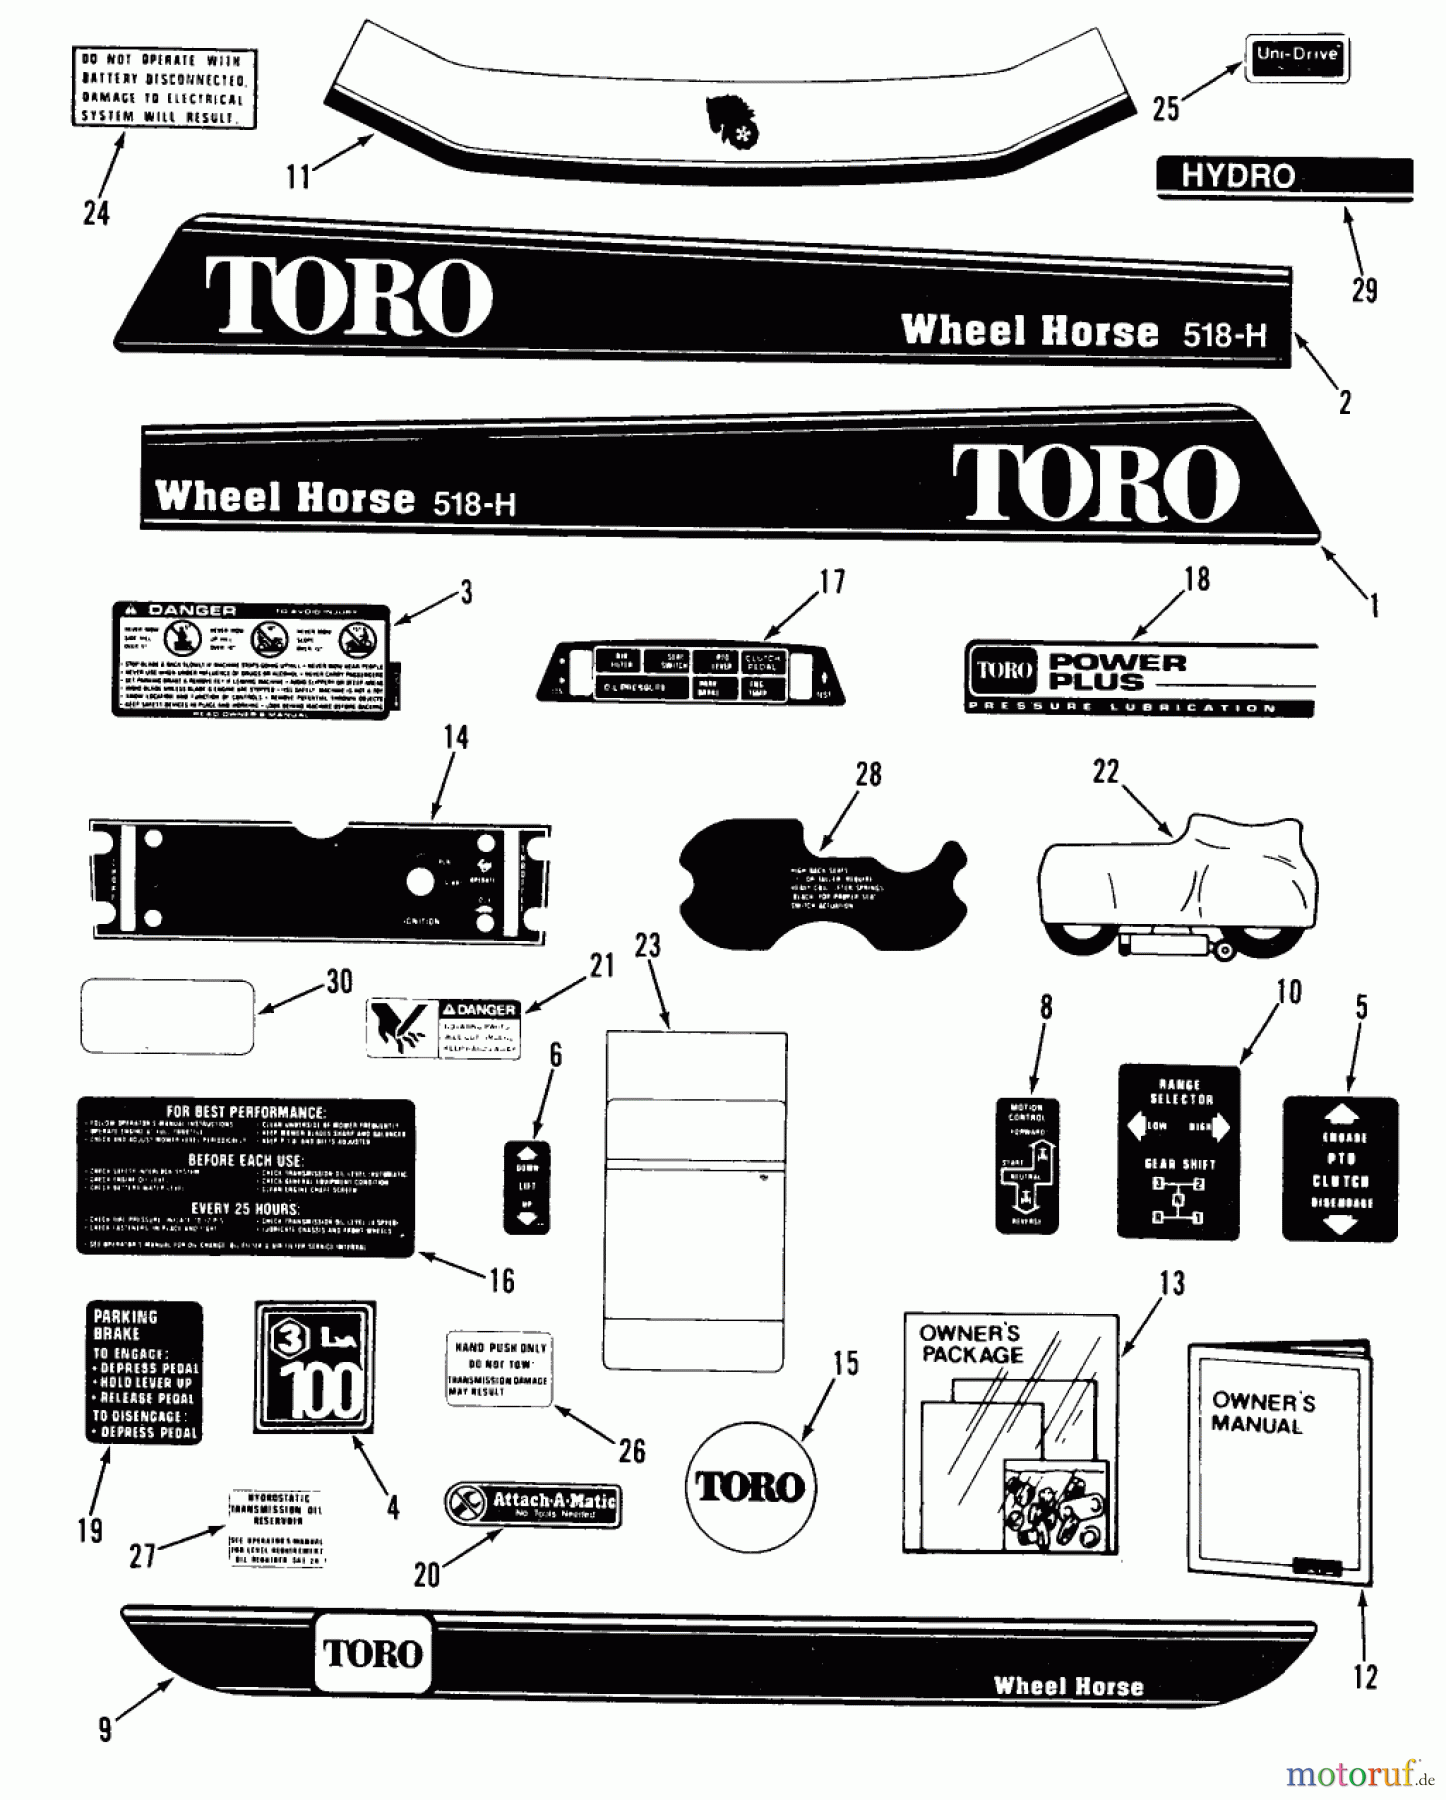  Toro Neu Mowers, Lawn & Garden Tractor Seite 2 R1-18OE02 (518-H) - Toro 518-H Garden Tractor, 1990 DECALS